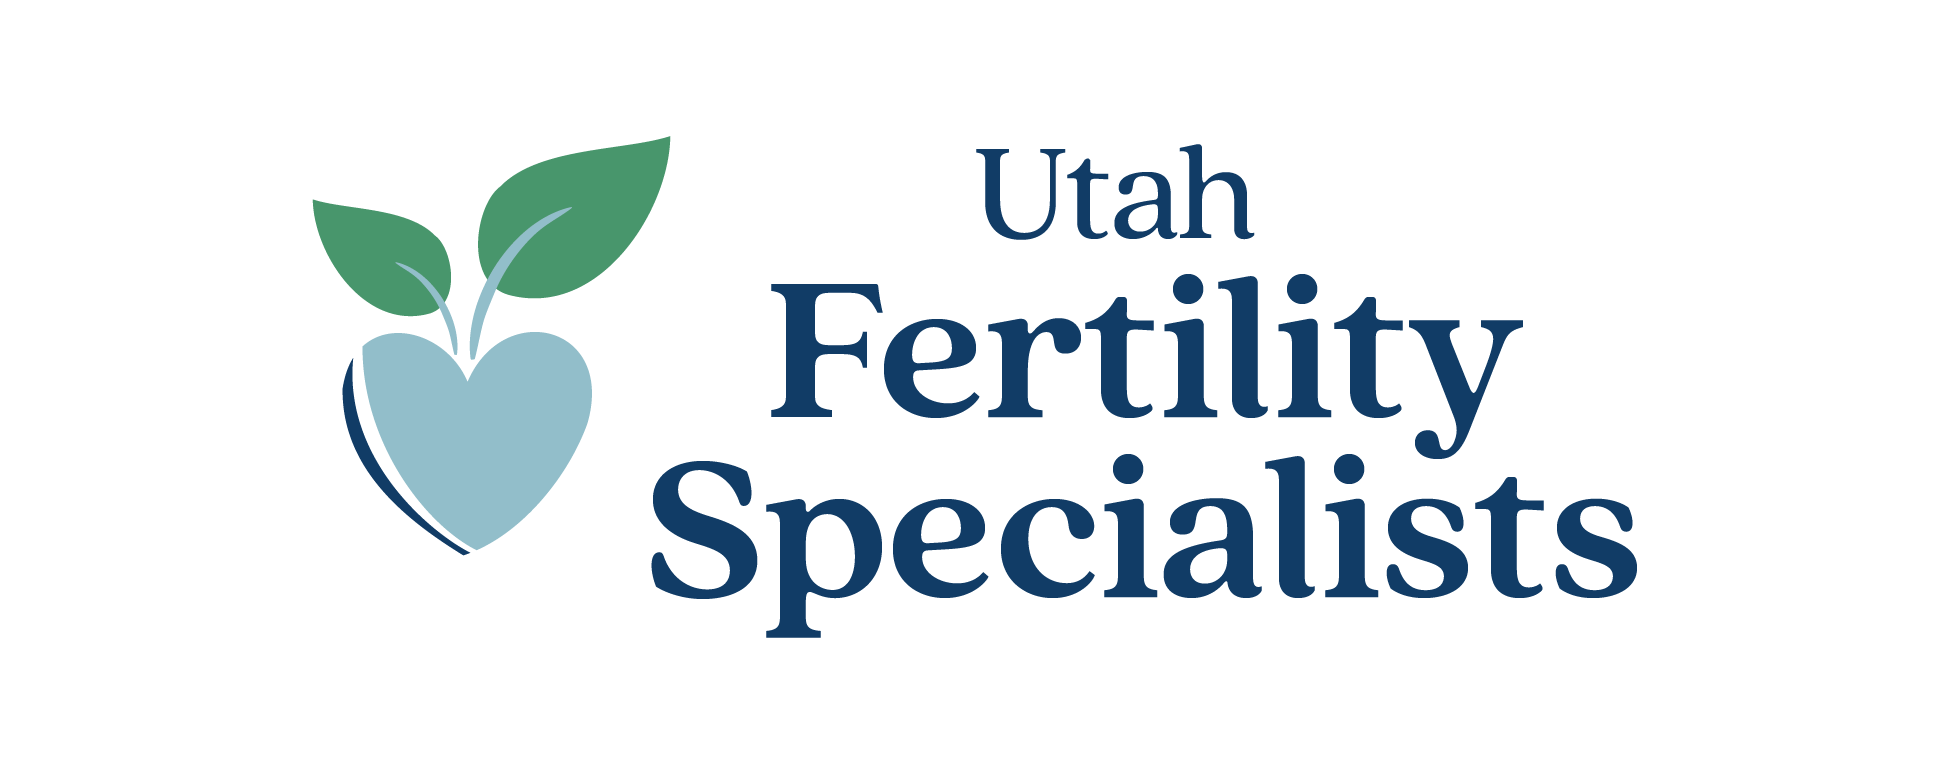 Utah Fertility Specialists